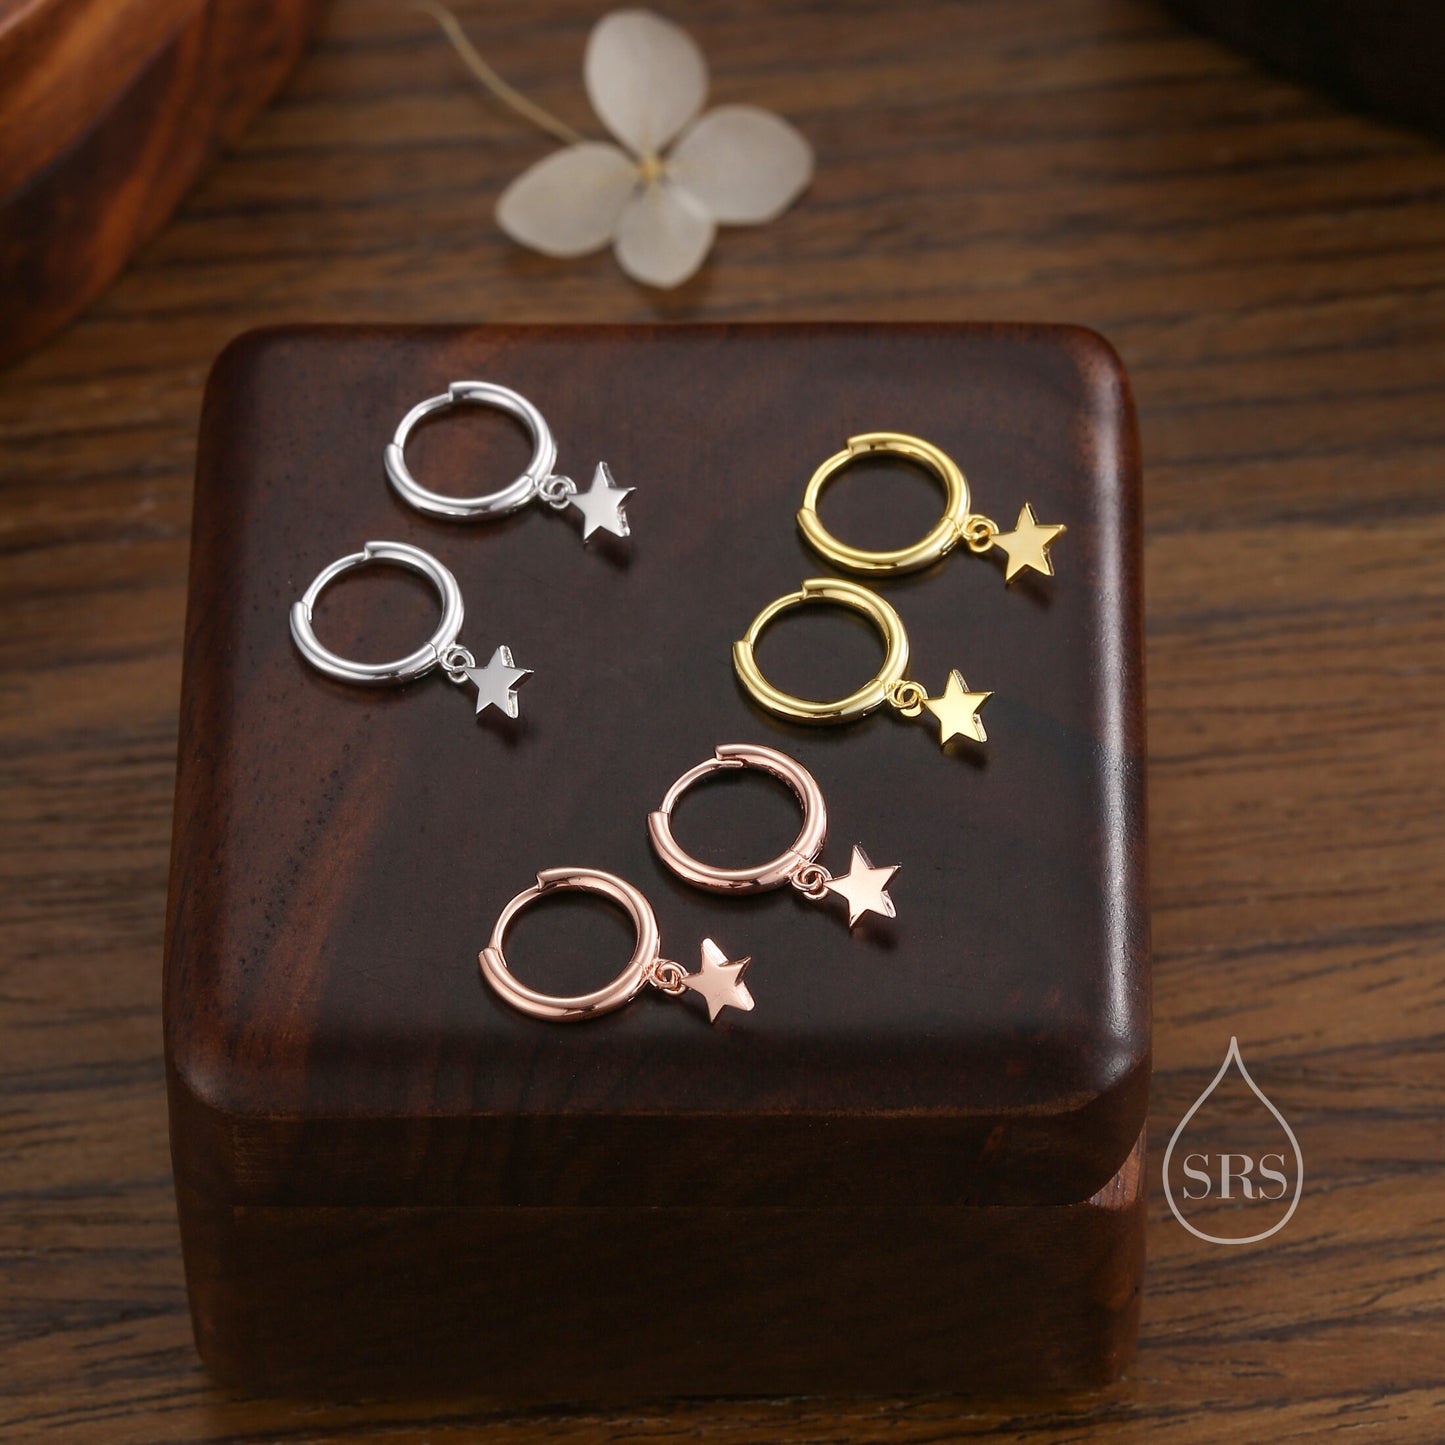 Pair of Star Huggie Hoop Earrings in Sterling Silver, Dangle Star Hoops, Celestial Earrings, Silver, Gold or Rose Gold